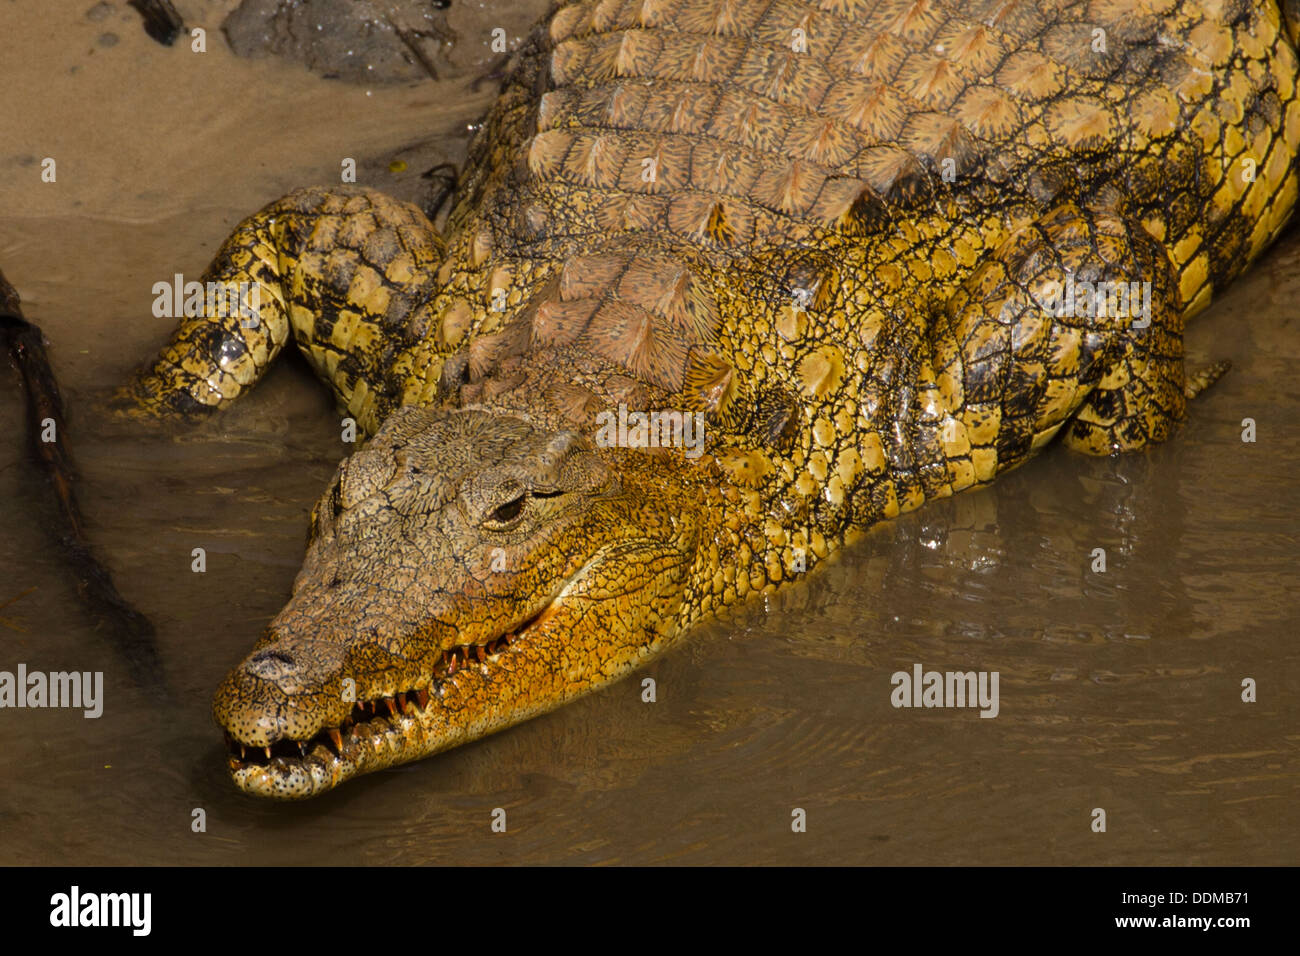 El cocodrilo del Nilo (Crocodylus niloticus) Foto de stock